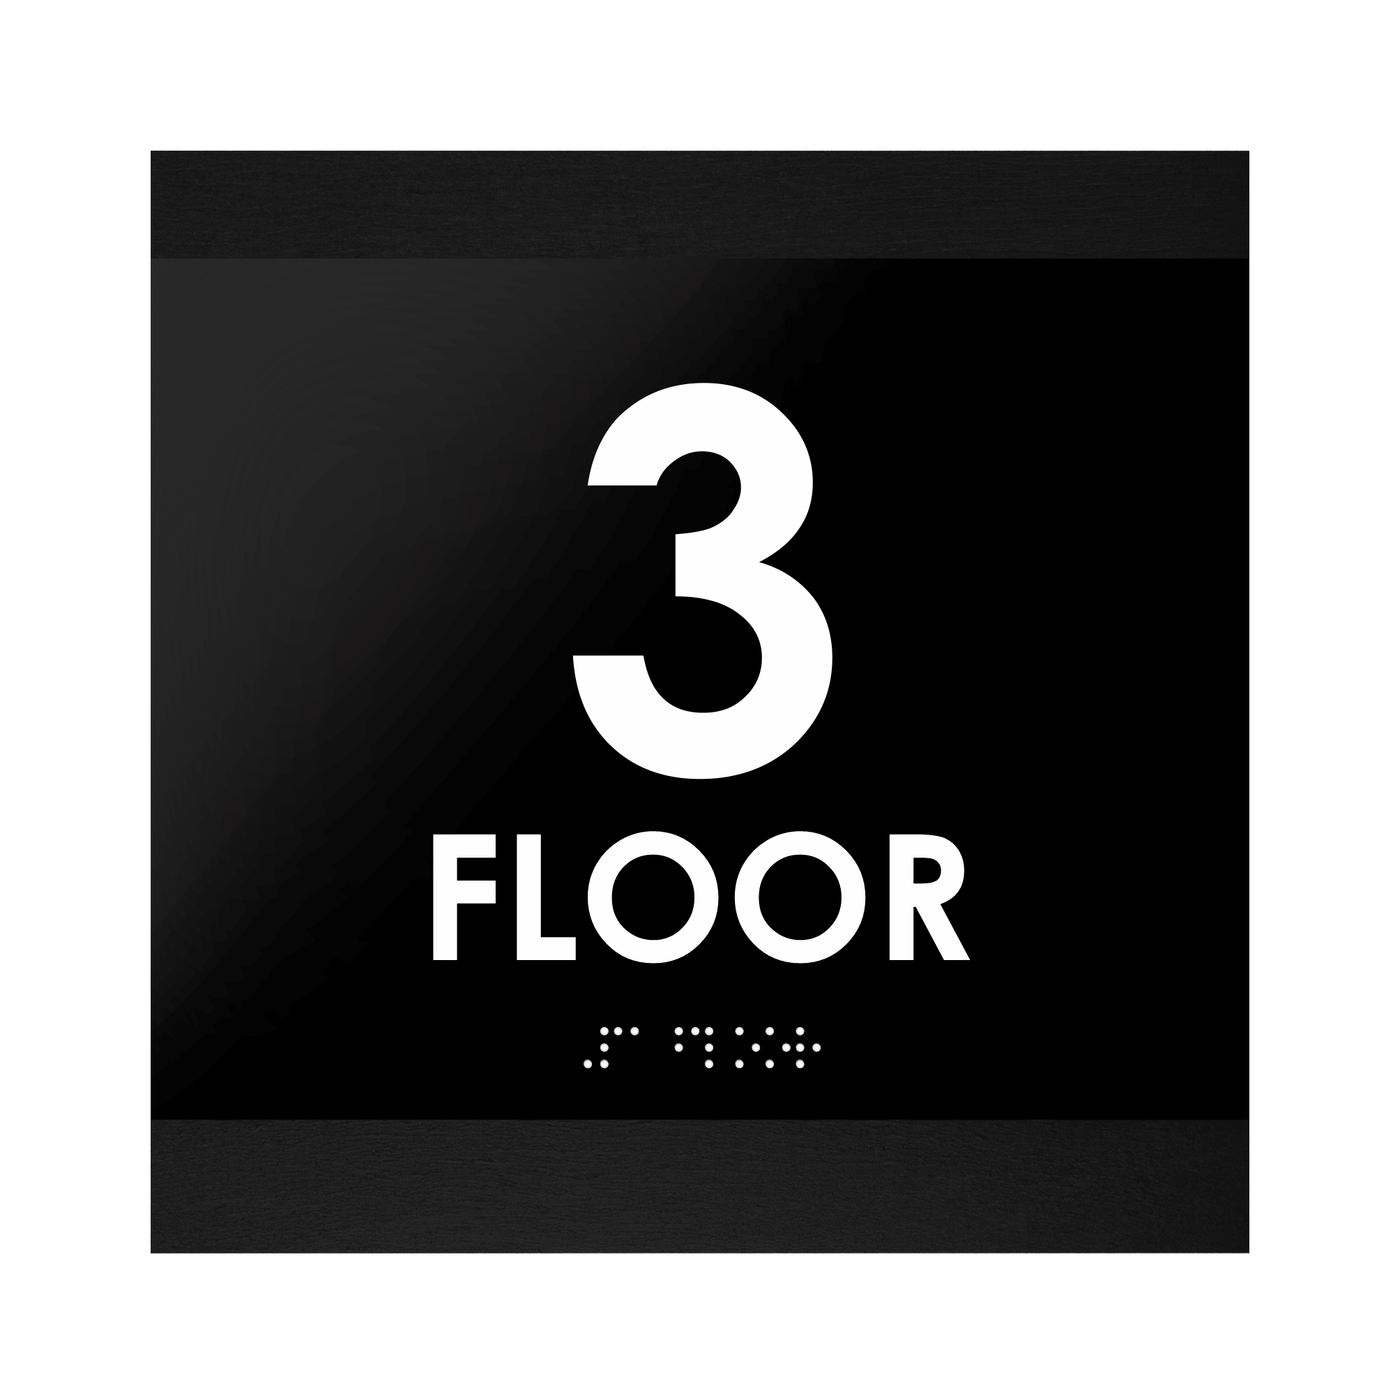 Floor Signs - 3rd Floor Sign "Buro" Design